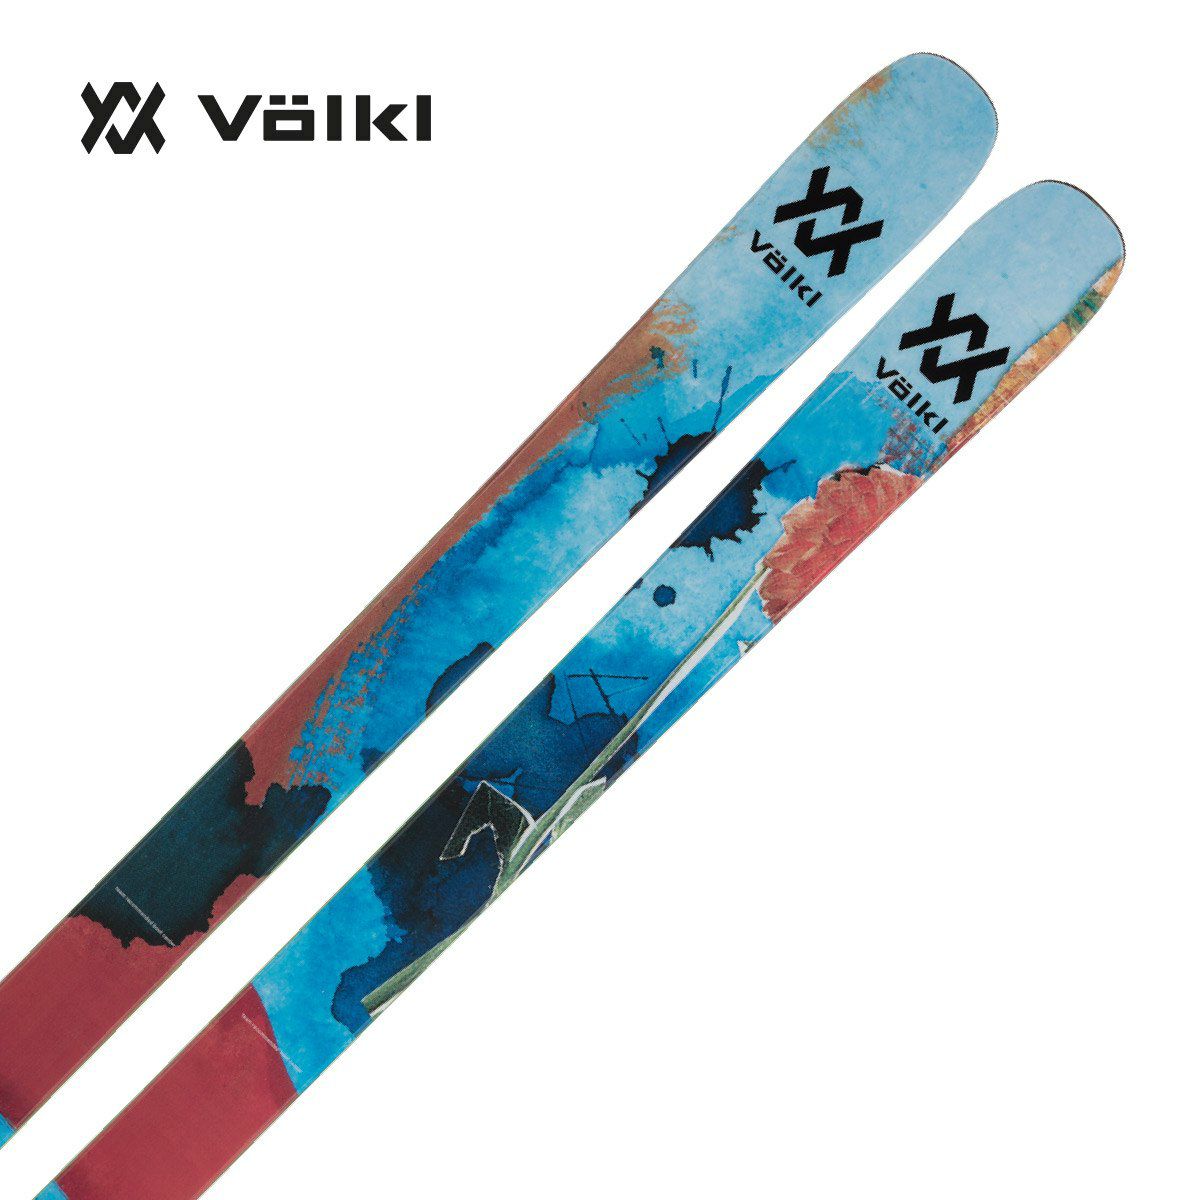 最安値】スキー板 volkl revolt104 180cm-